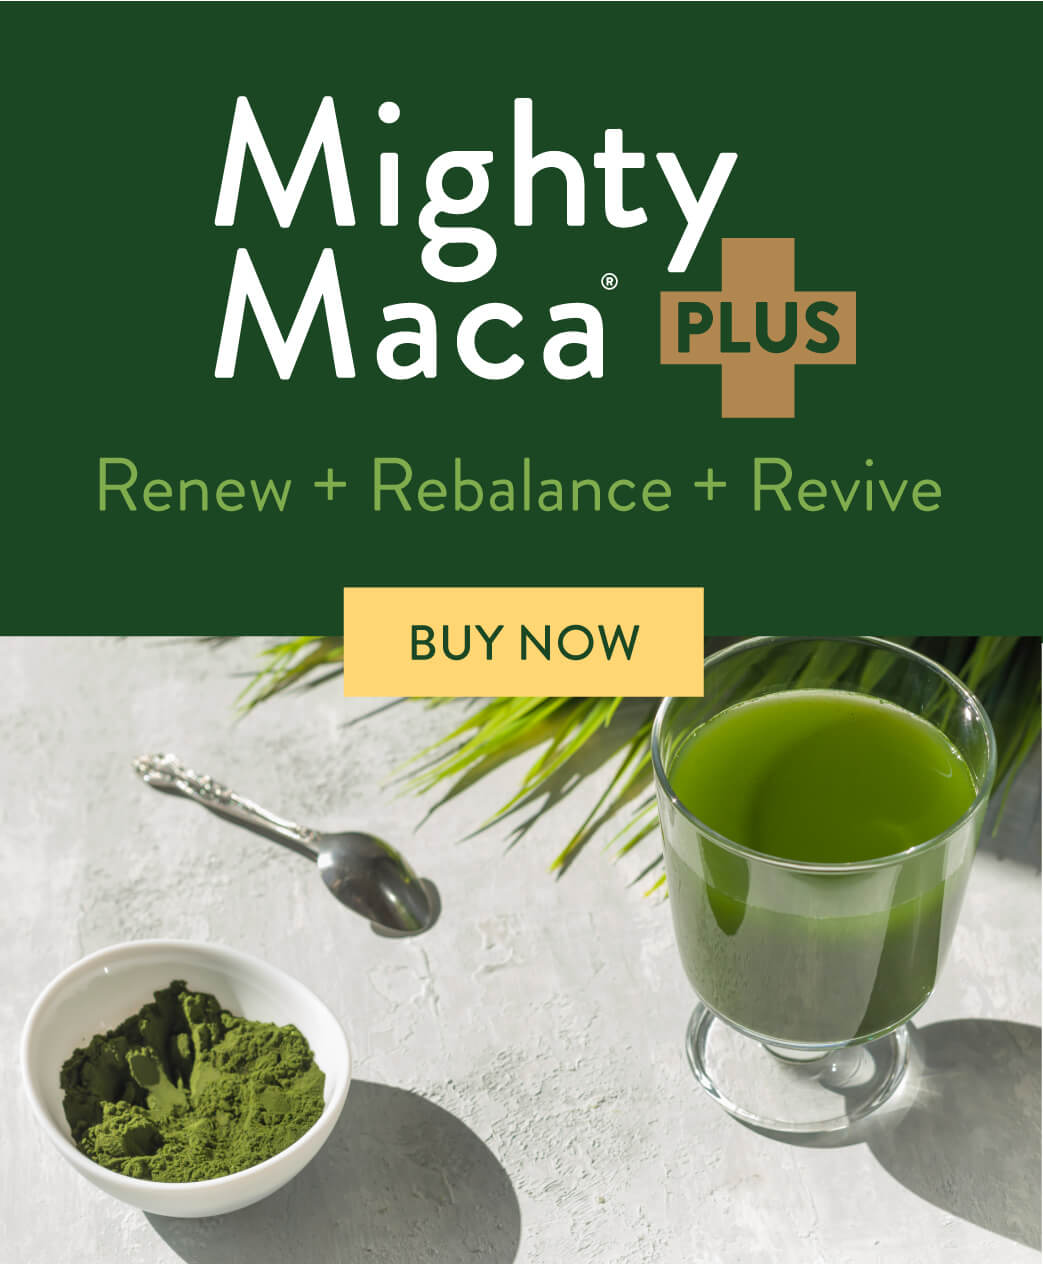 Mighty Maca Plus. Renew + Rebalance + Revive. Buy Now